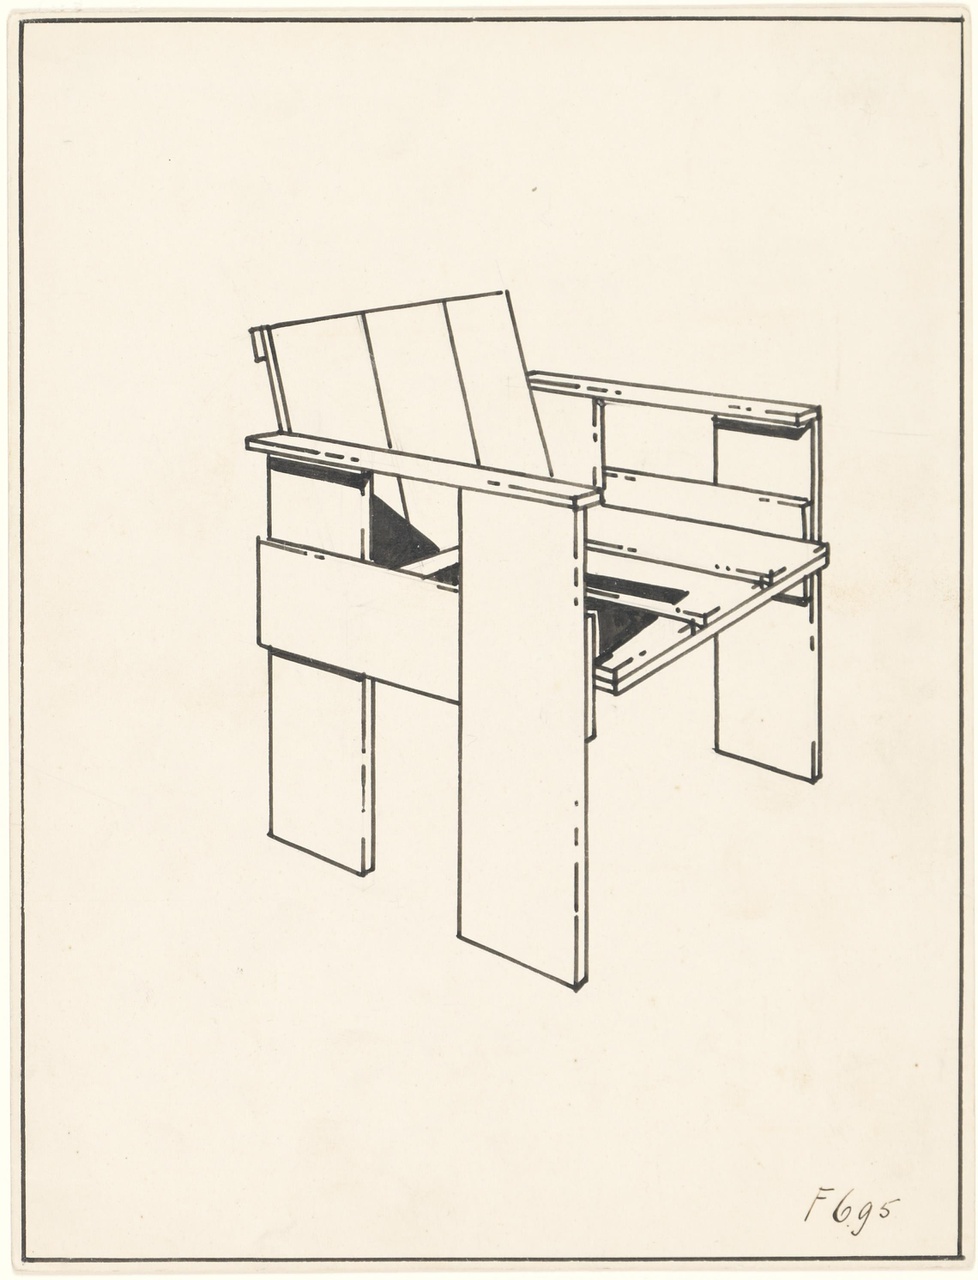 Kratmeubelen (stoel, bureaustoel, f. 6,95)